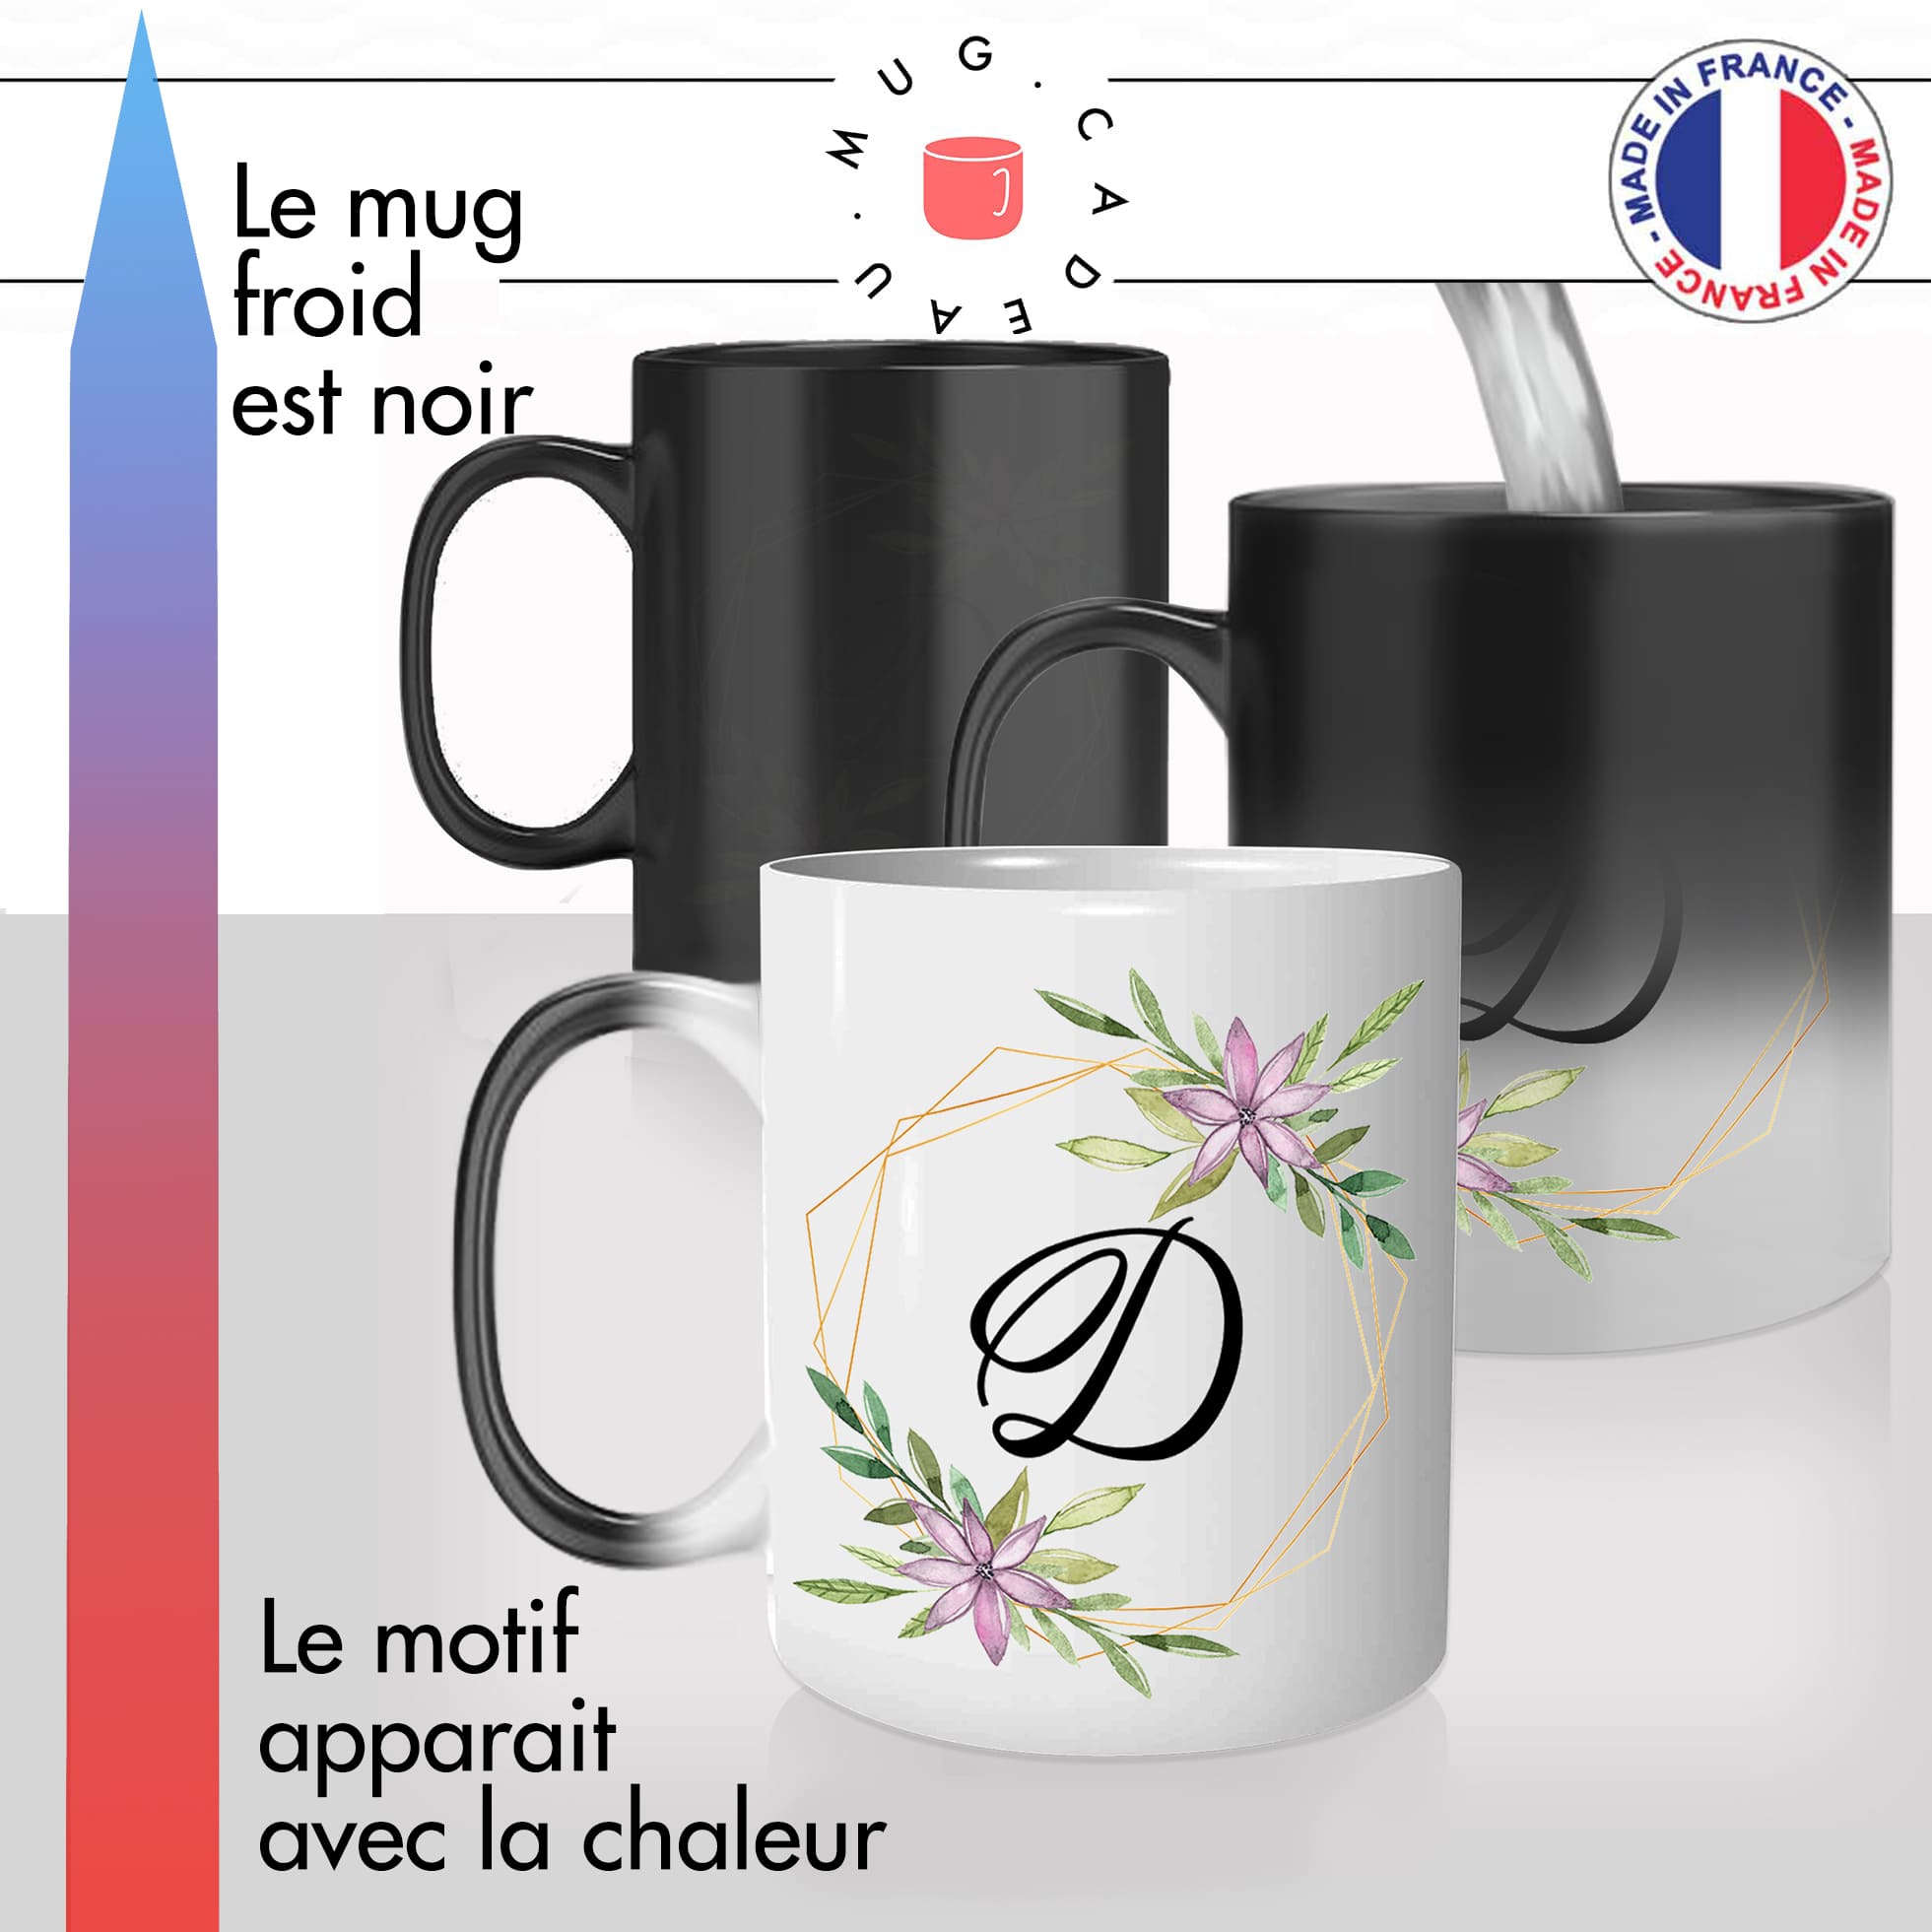 mug magique thermoréactif thermo chauffant personnalisé initiale lettre D fleurs mignon prenom idée cadeau original fun